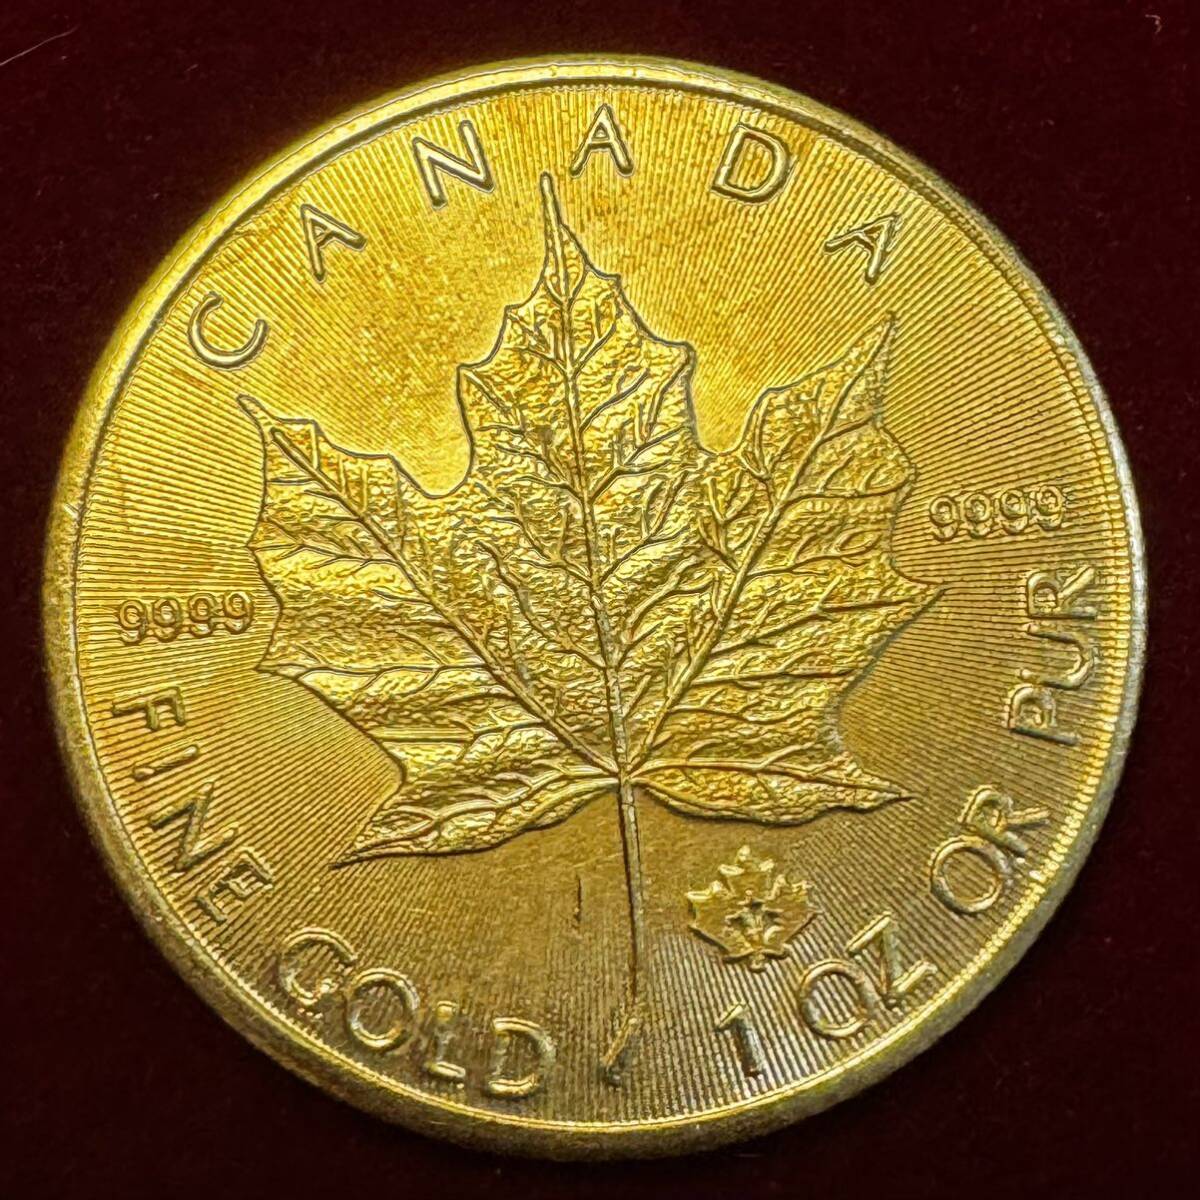 カナダ 硬貨 古銭 英連邦 2020年 エリザベス2世 メープル サトウカエデ 国章 記念幣 コイン の画像1